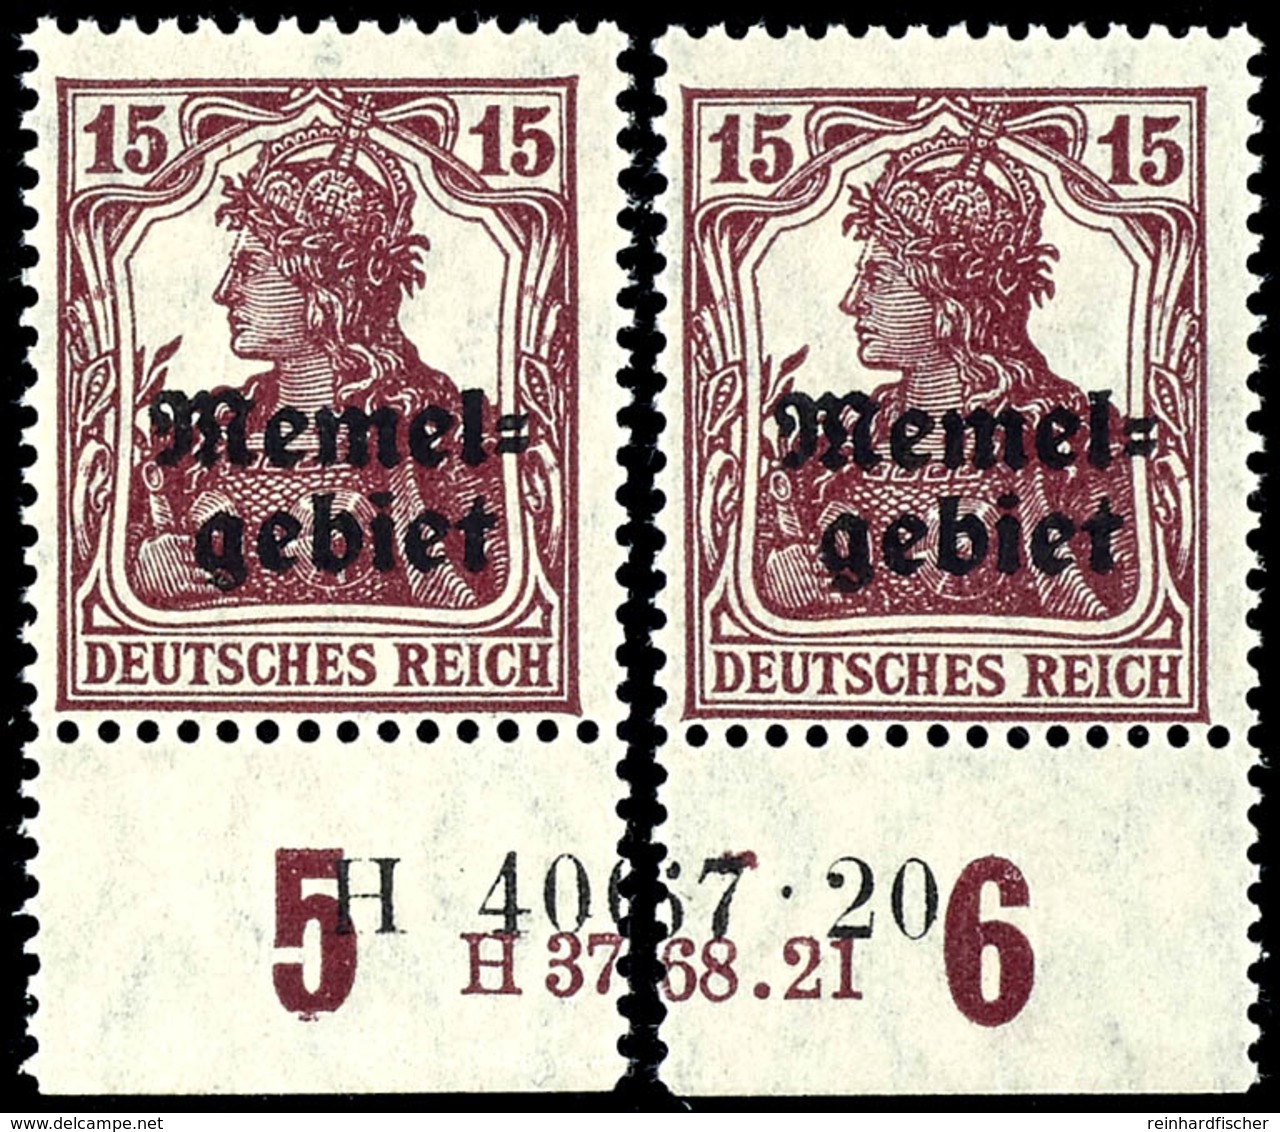 15 Pfennig Germania Mit Aufdruck, Senkrecht Geriffelte Gummierung, Postfrisch, Geteiltes Unterrandpaar Mit HAN-U 3768.21 - Memel (Klaipeda) 1923